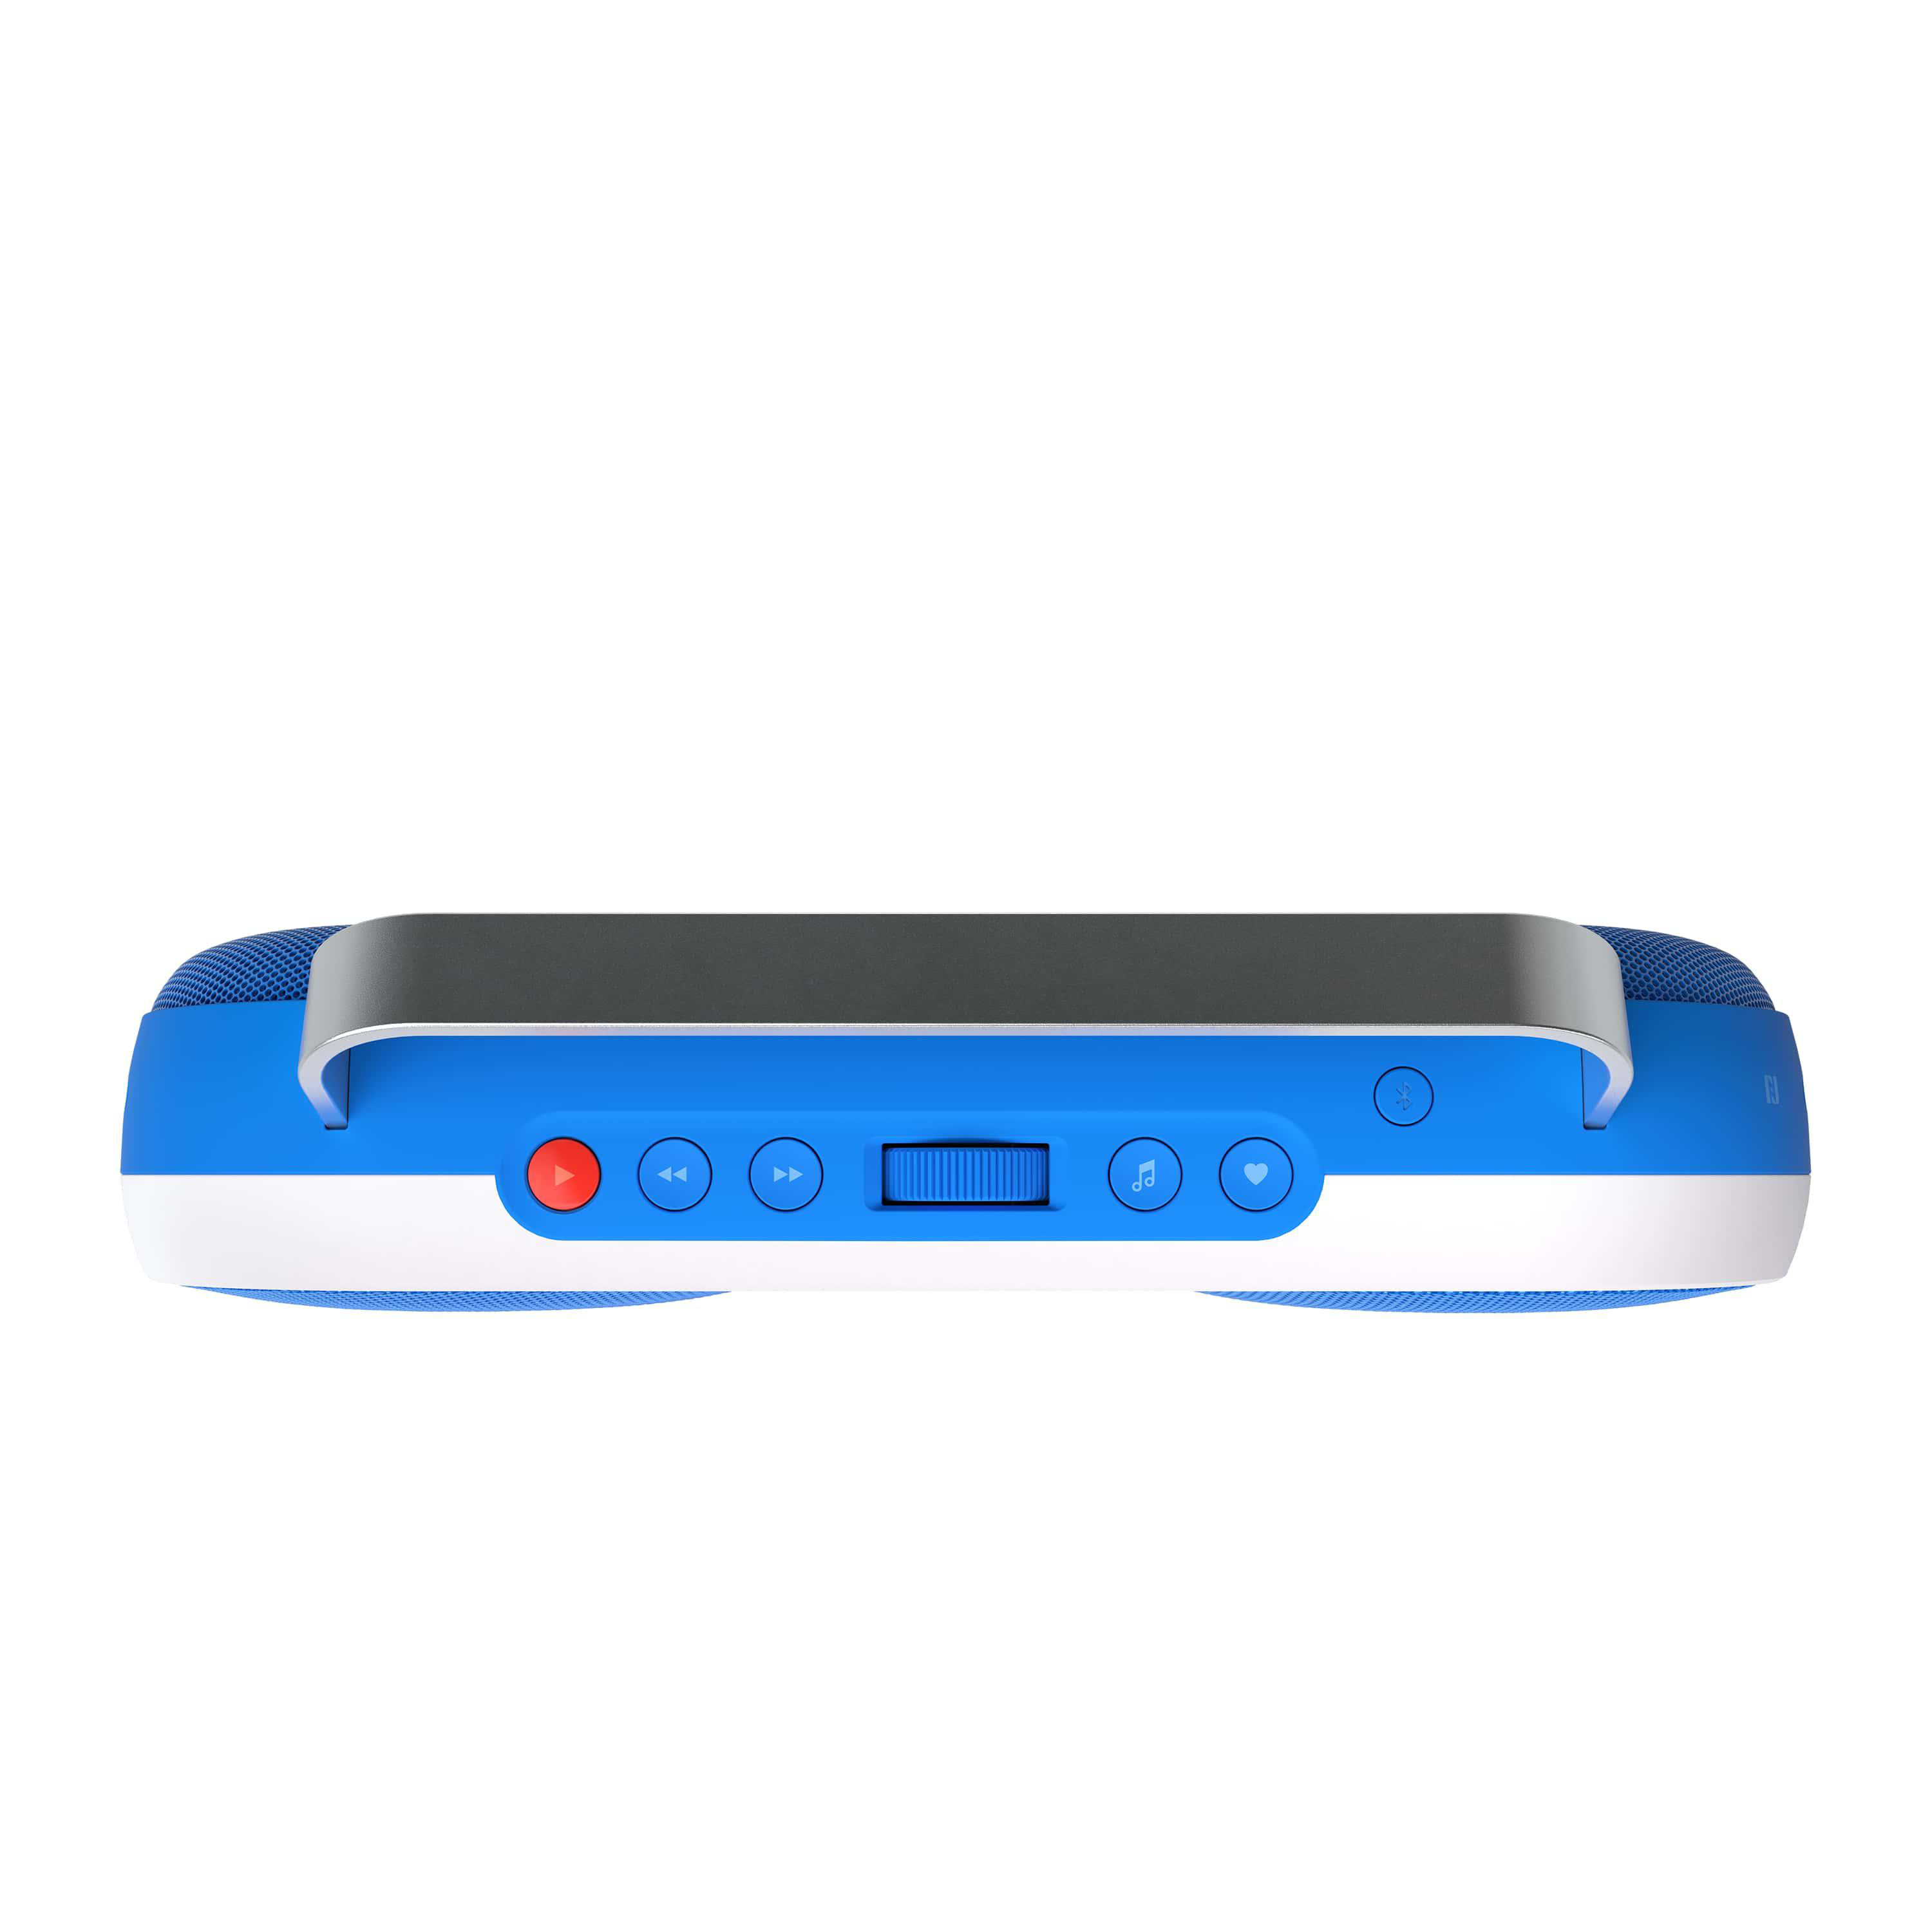 P3 Blau/Weiß Music Bluetooth Lautsprecher Player , POLAROID